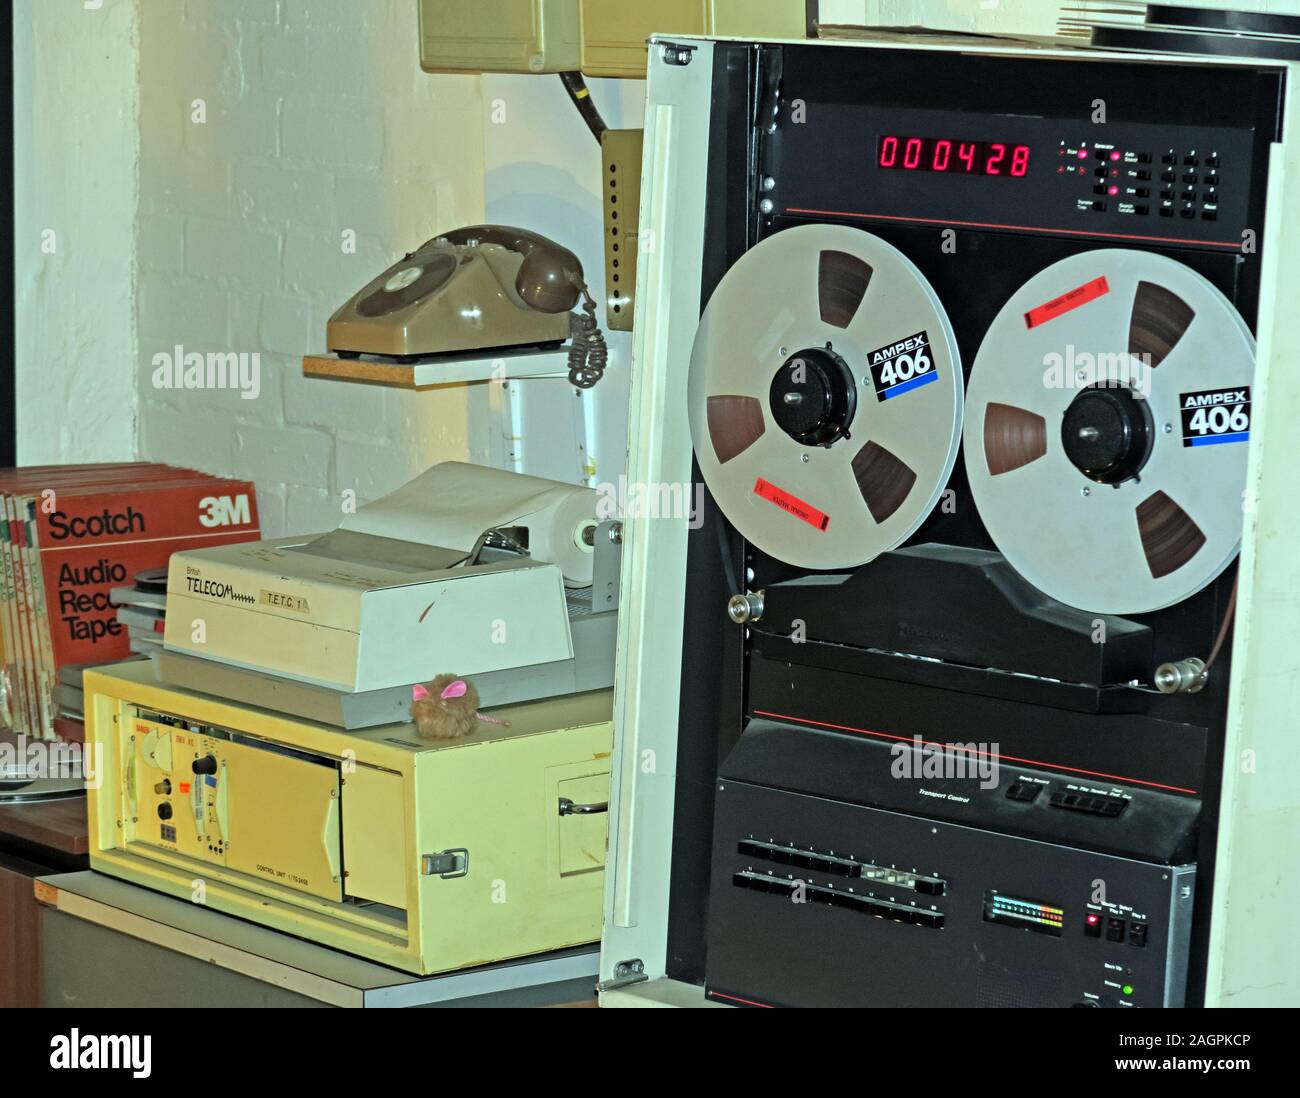 Equipement d'enregistrement de télécommunications,années 1980,bunker nucléaire secret,Nantwich,Cheshire,Angleterre,Royaume-Uni Banque D'Images